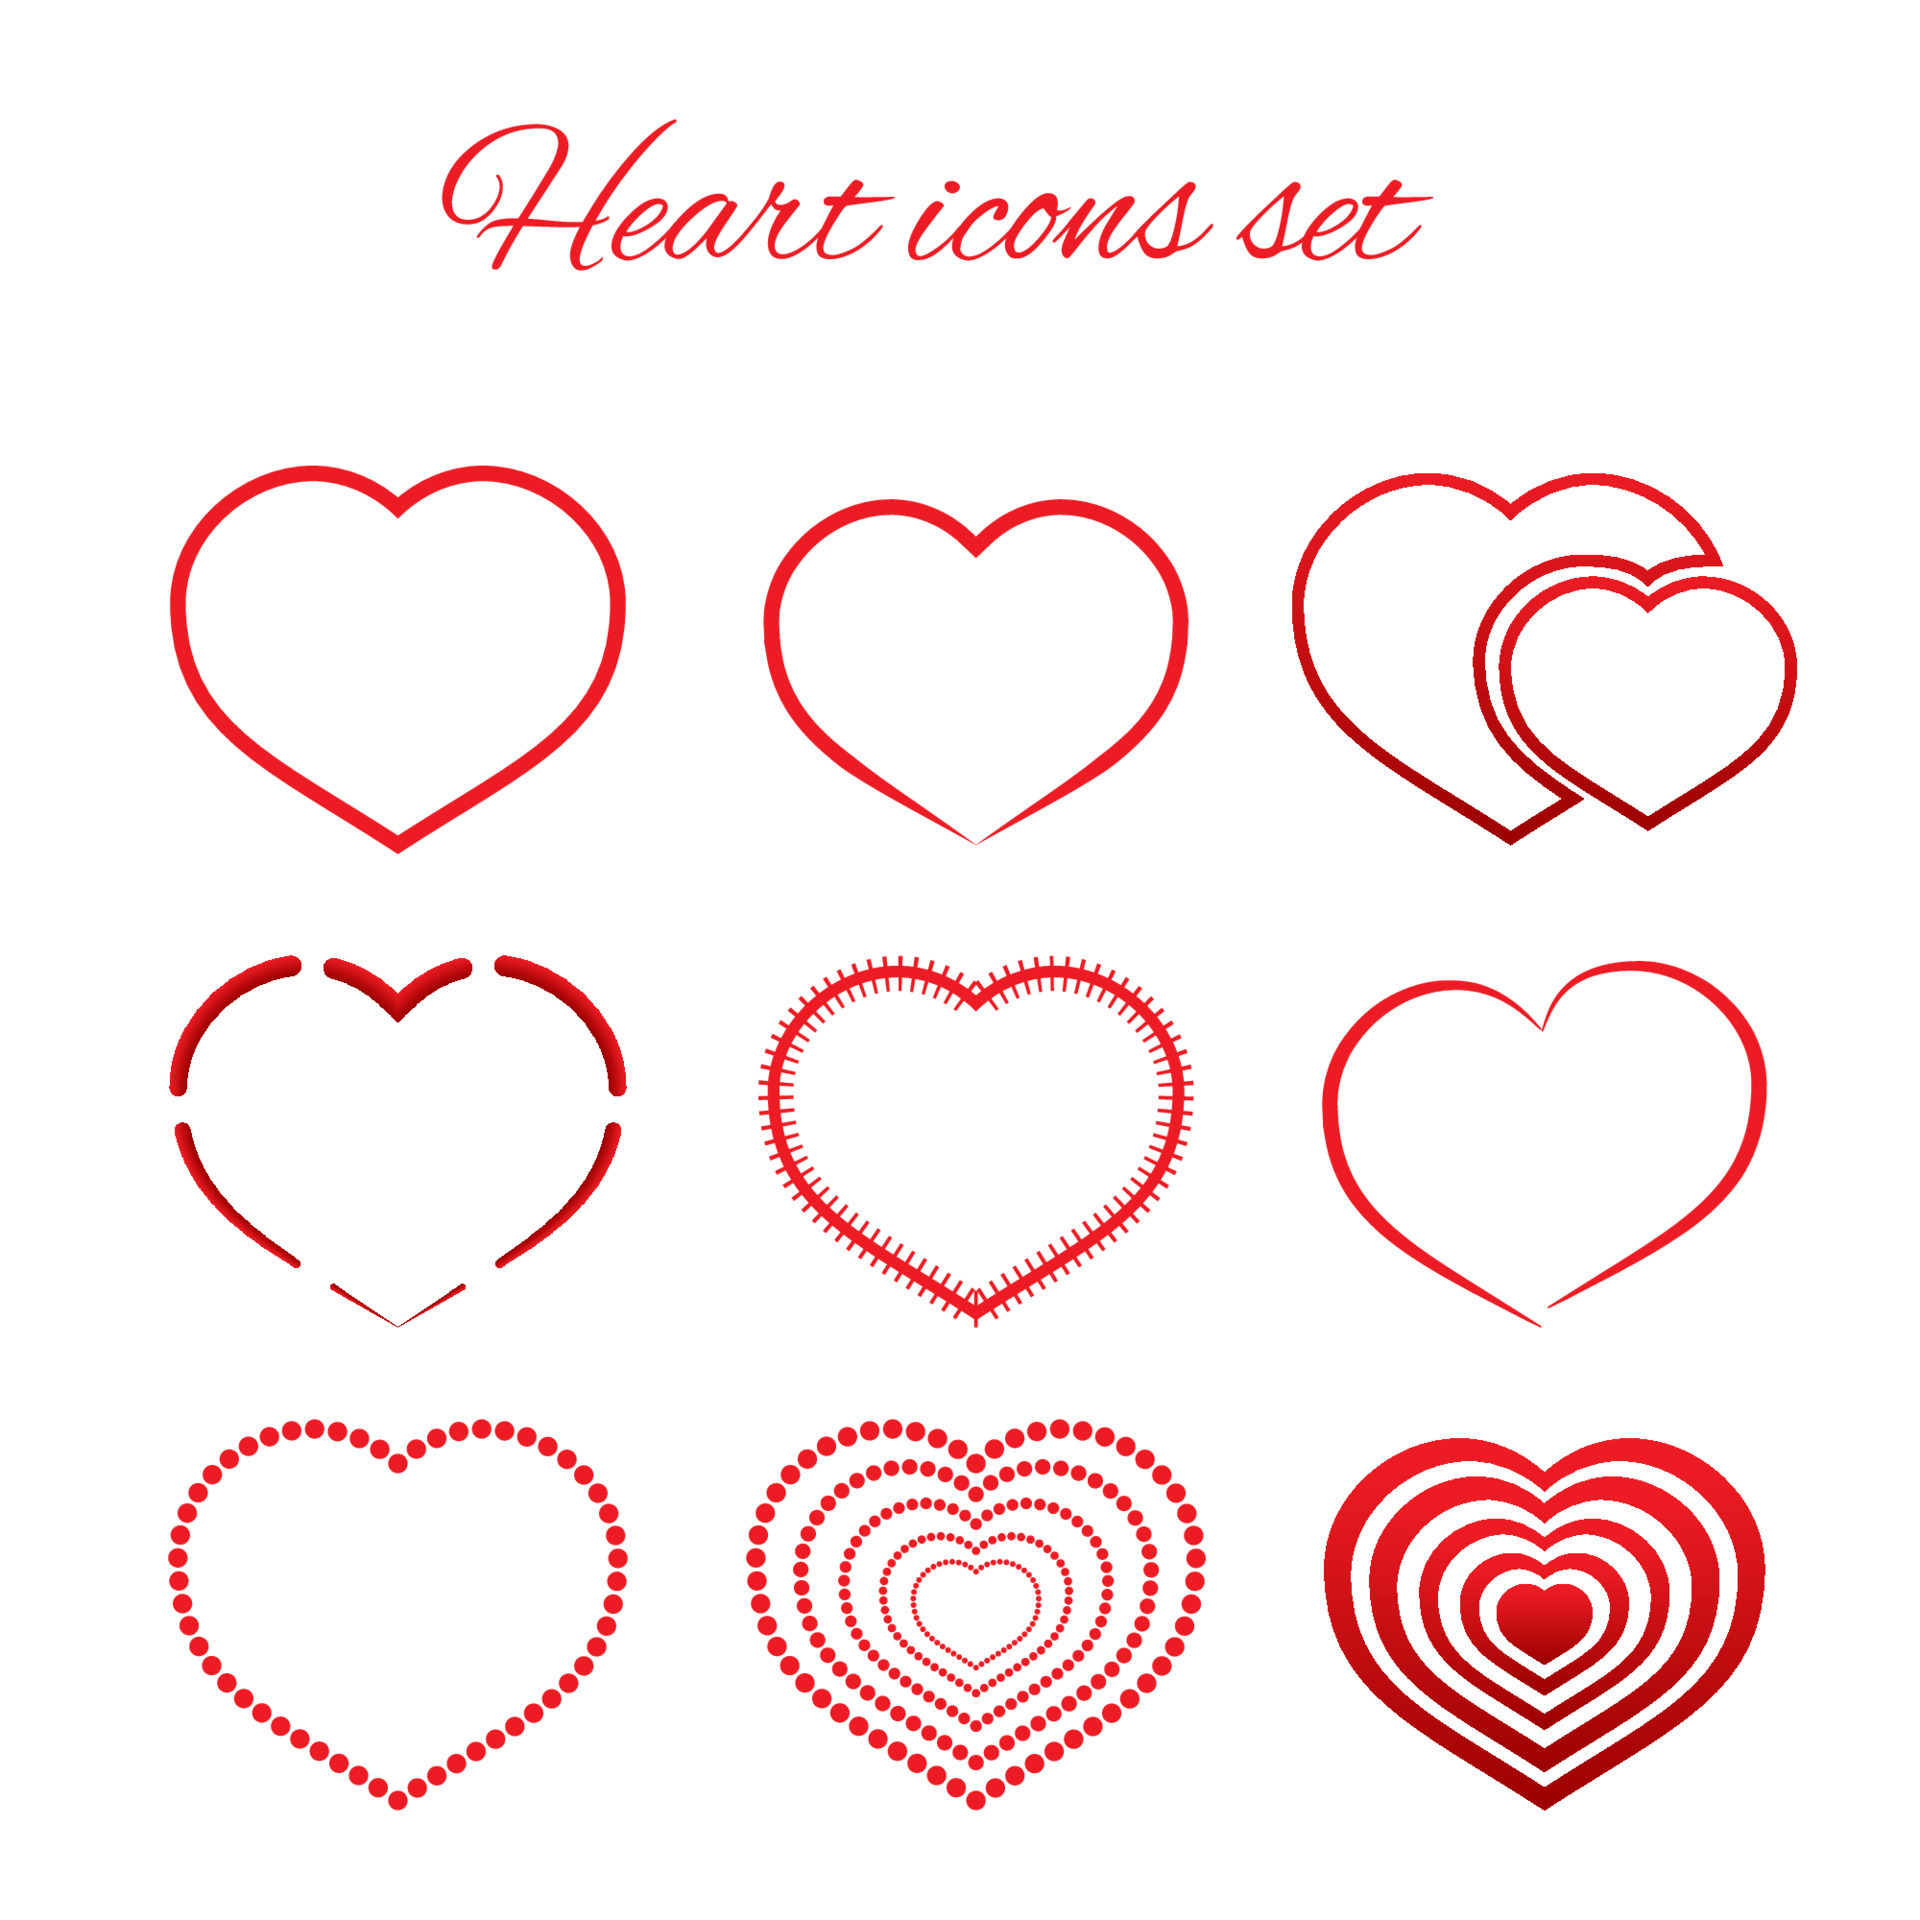 Hình trái tim đỏ phẳng trên nền trắng là một biểu tượng tinh thần lãng mạn và thích hợp cho những ai muốn tìm kiếm một điểm nhấn độc đáo cho ảnh của mình. Đừng bỏ qua mẫu hình nền này nếu bạn là một người yêu thích sự đơn giản nhưng không kém phần tinh tế.